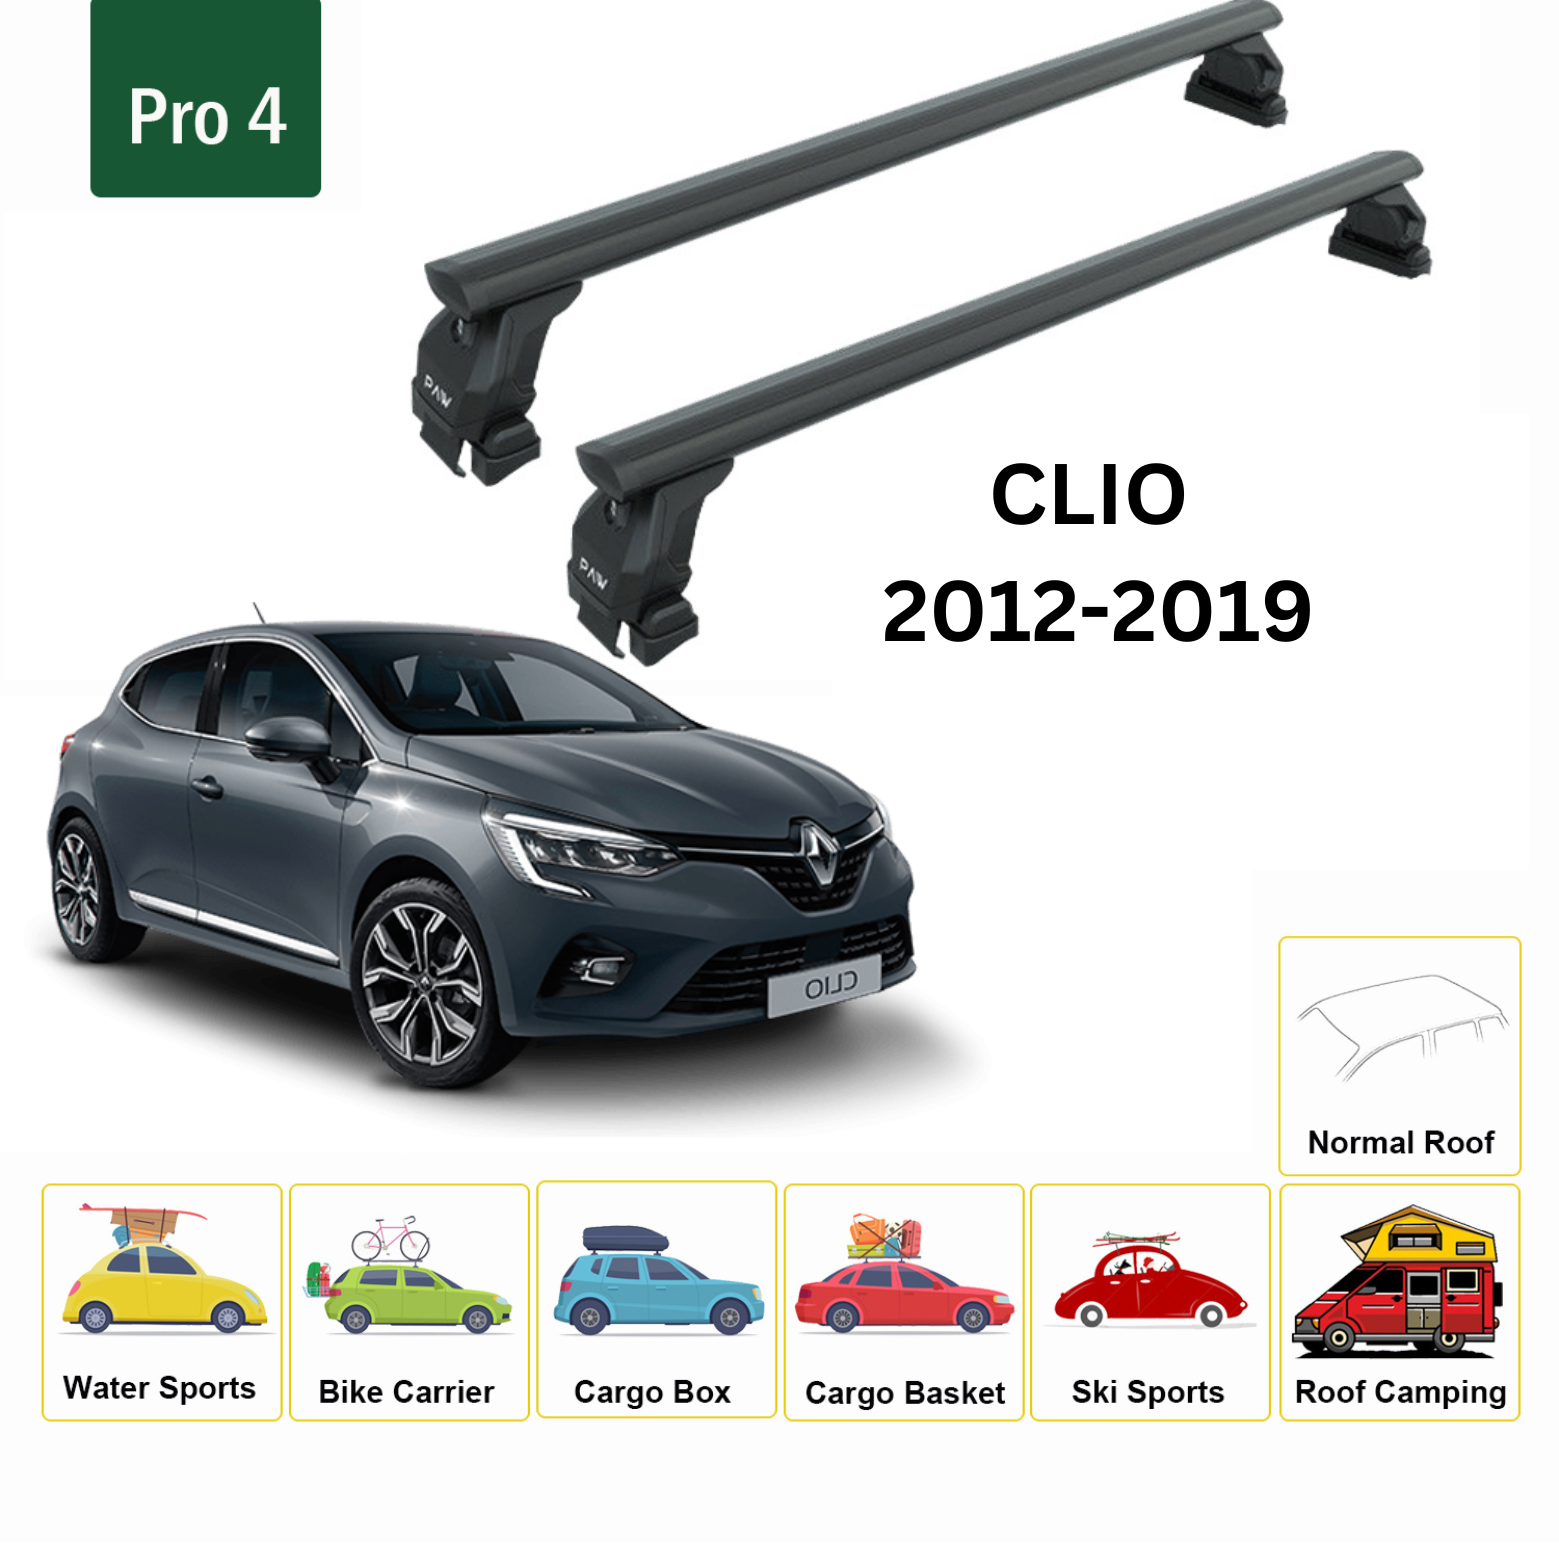 Renault Clio 2012-2019 Oluksuz Ara Atkısı Tavan Taşıyıcı Taşıyıcı Sistemleri Paw Pro 4 Siyah-2